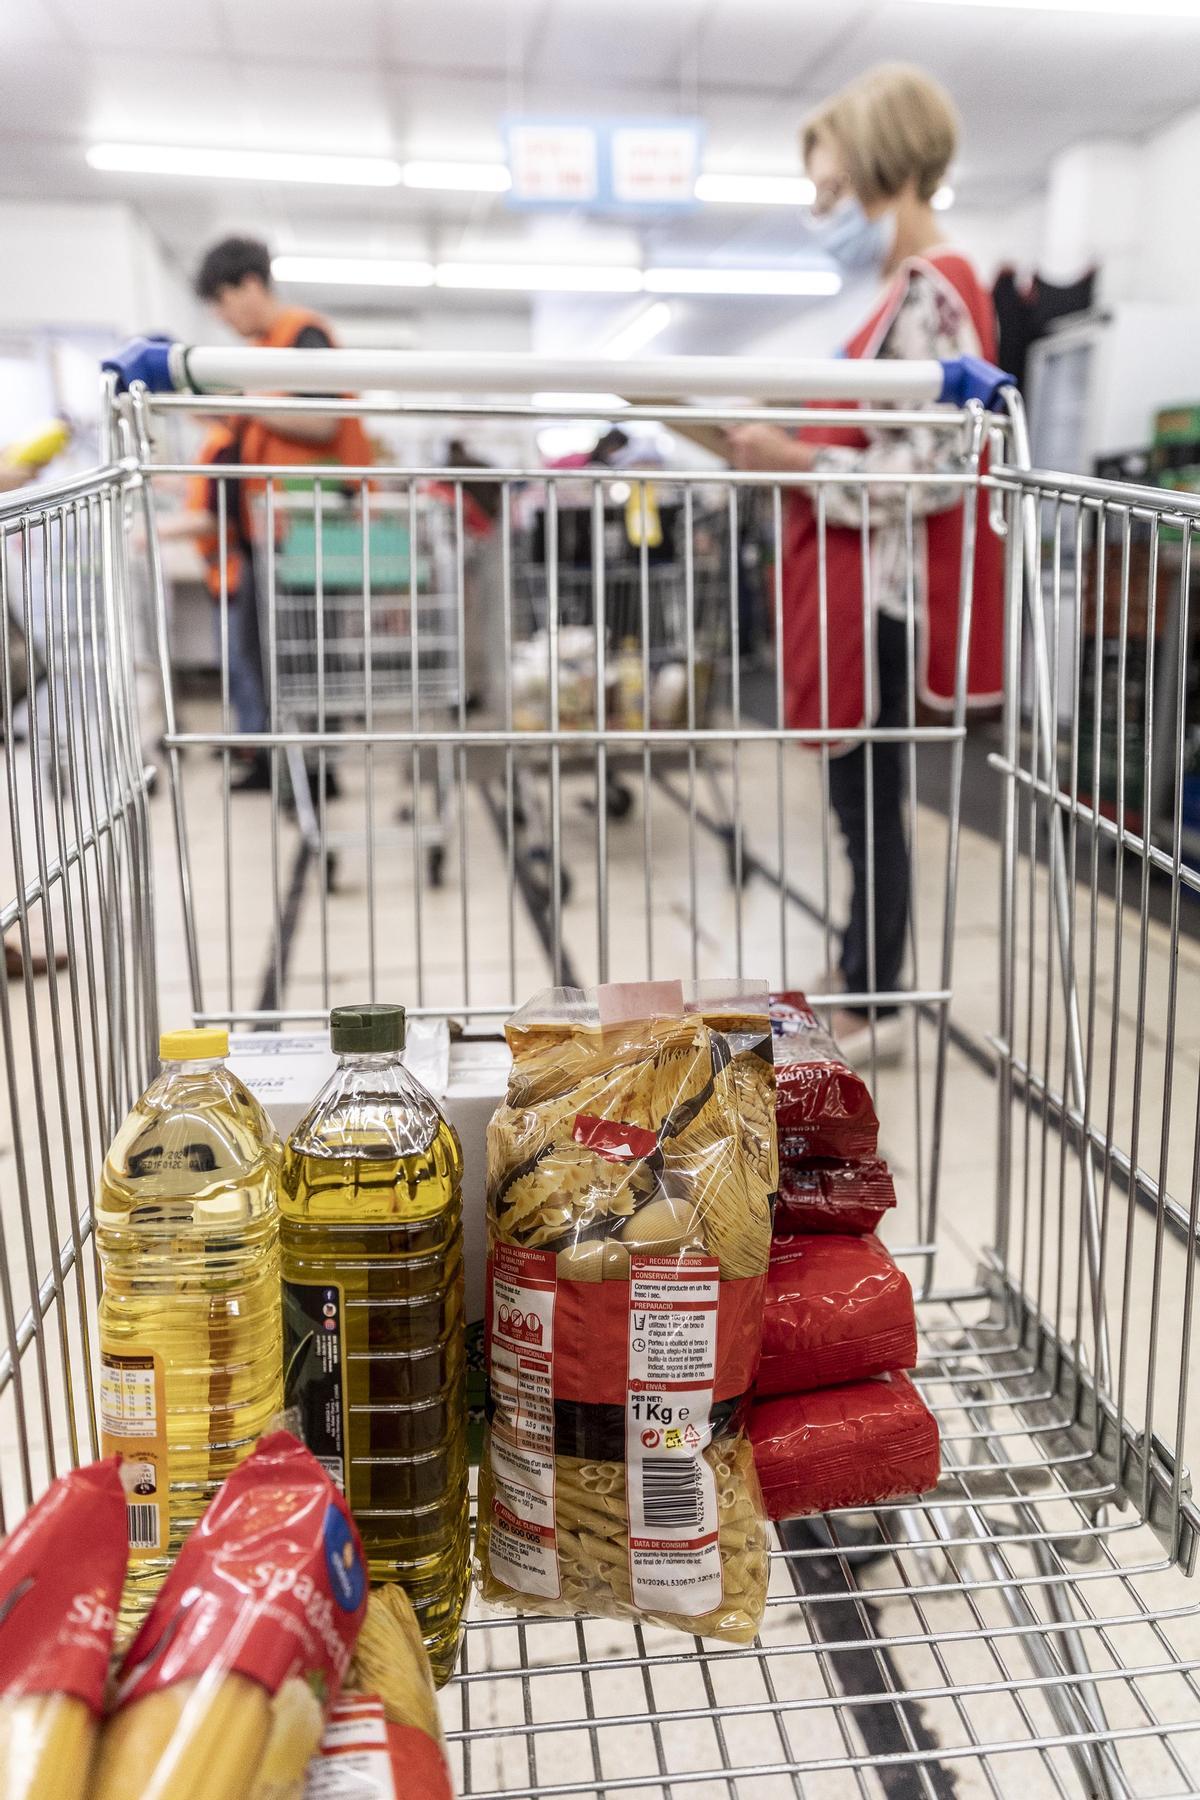 Diez años del supermercado social en Trinitat Vella